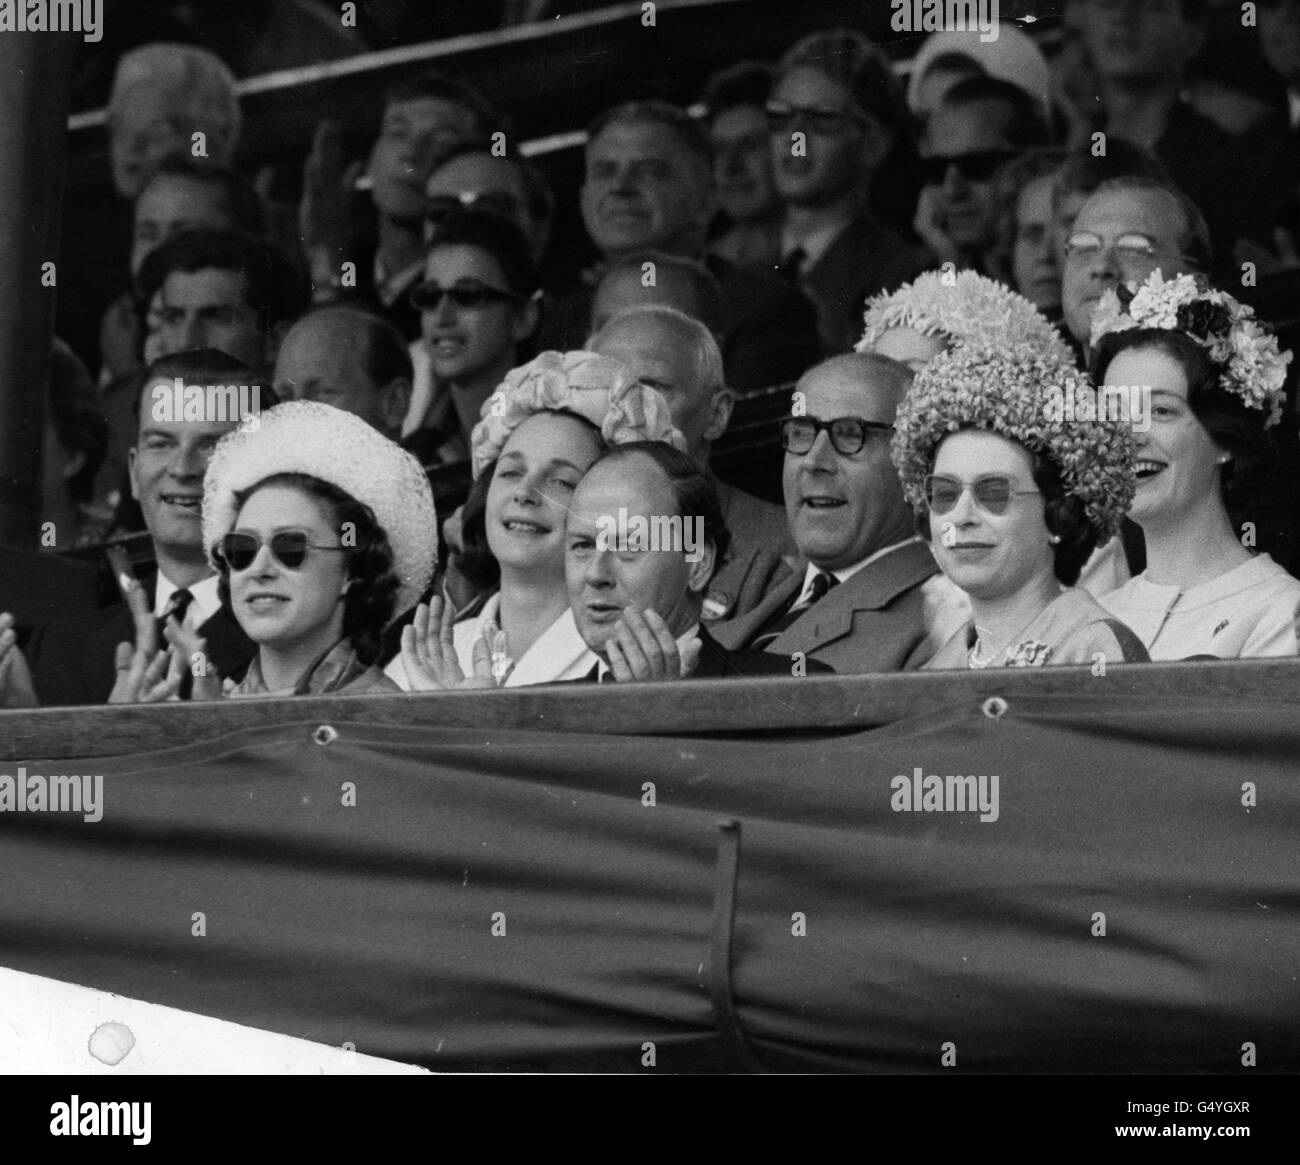 *numérisé basse résolution à partir de la version imprimée* la reine Elizabeth II et la princesse Margaret regardant la finale des singles hommes à Wimbledon. Banque D'Images